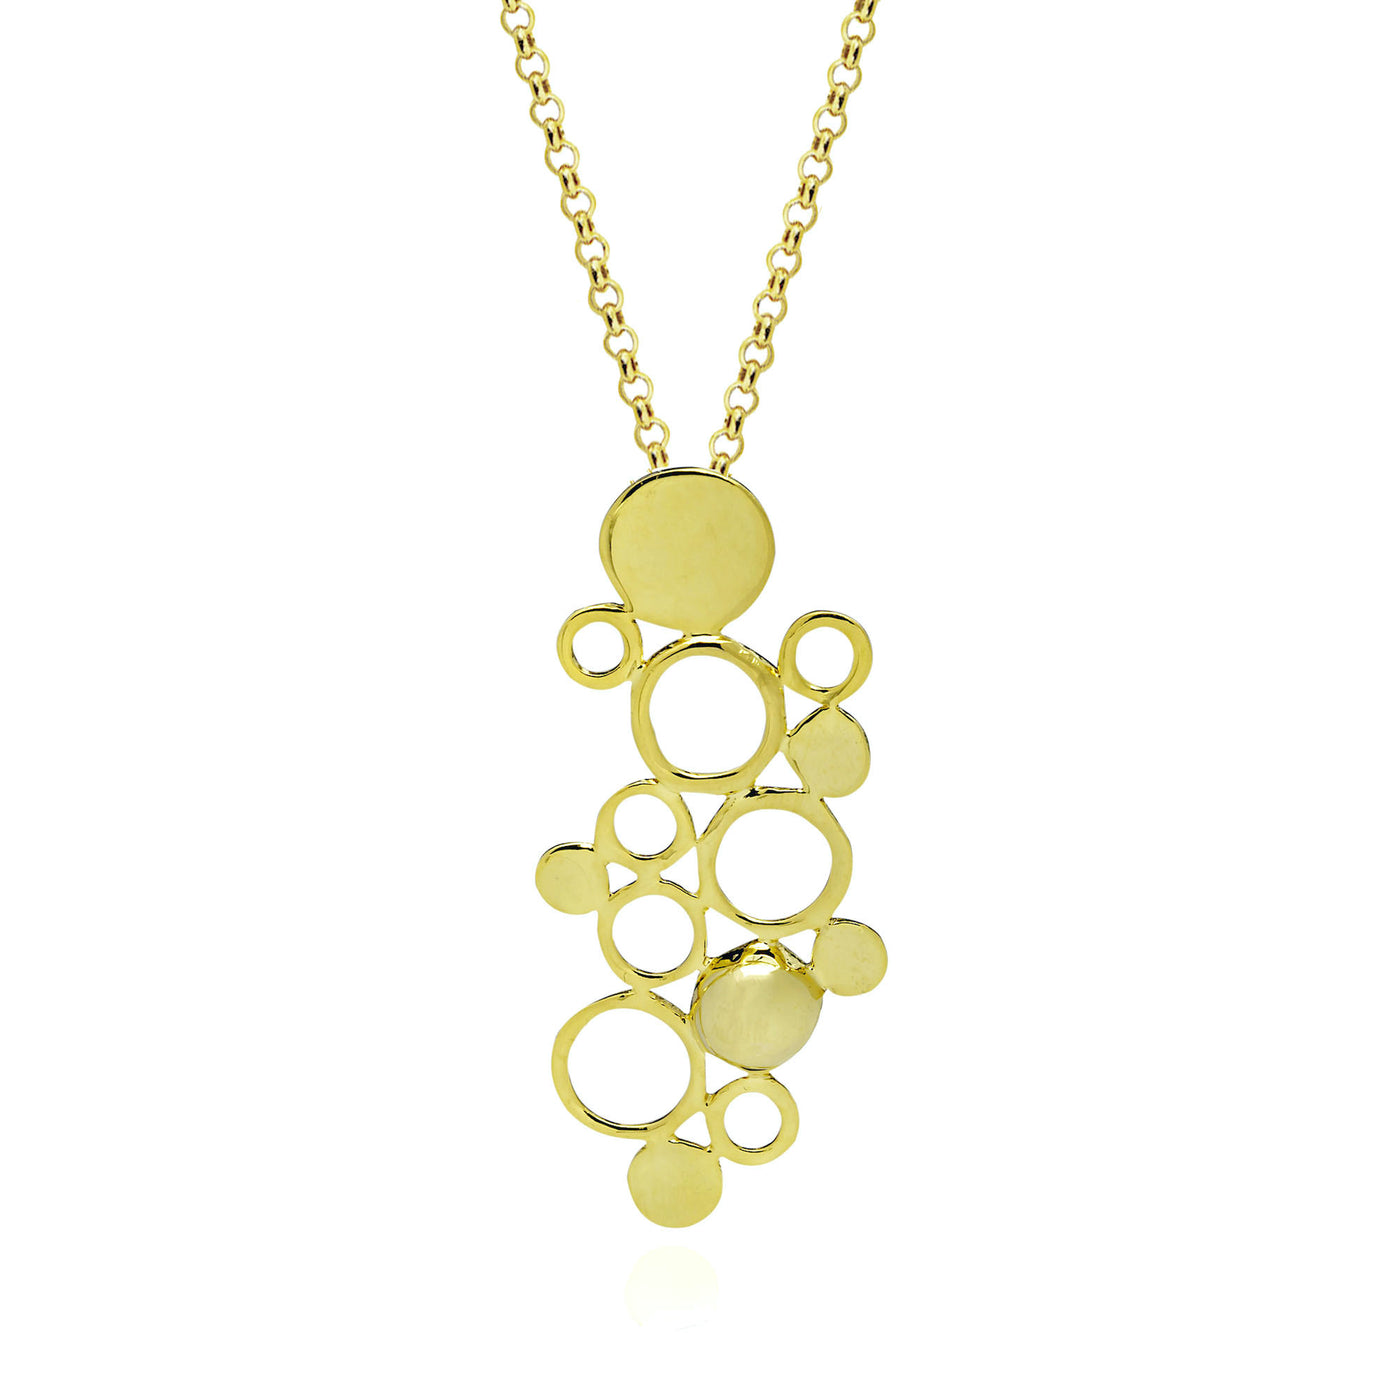 fine jewelry drop pendant neckalce in gold from Atelier ORMAN